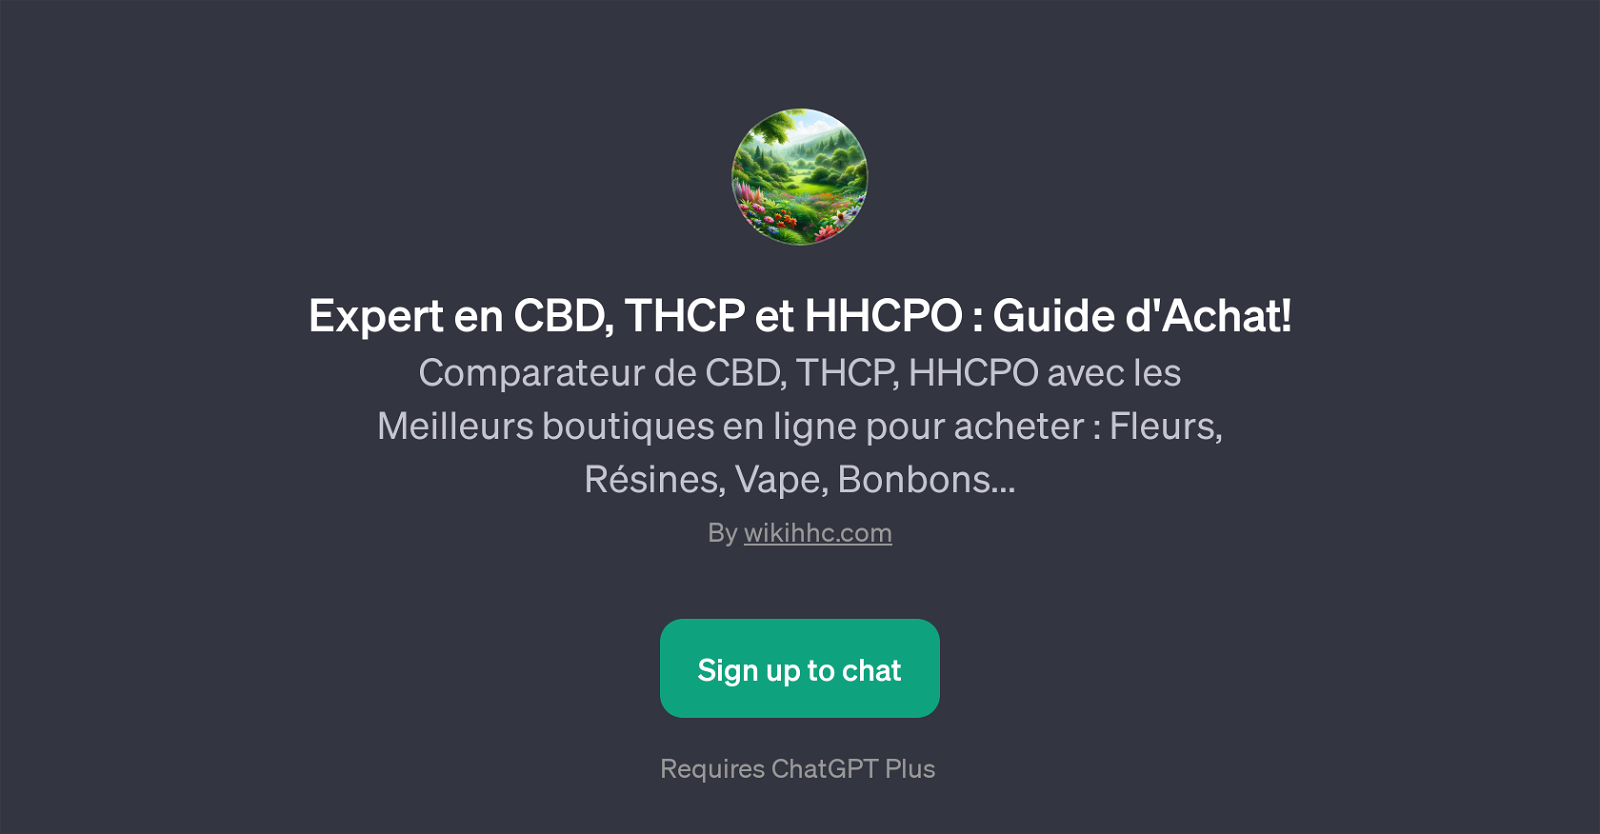 Expert en CBD, THCP et HHCPO : Guide d'Achat website